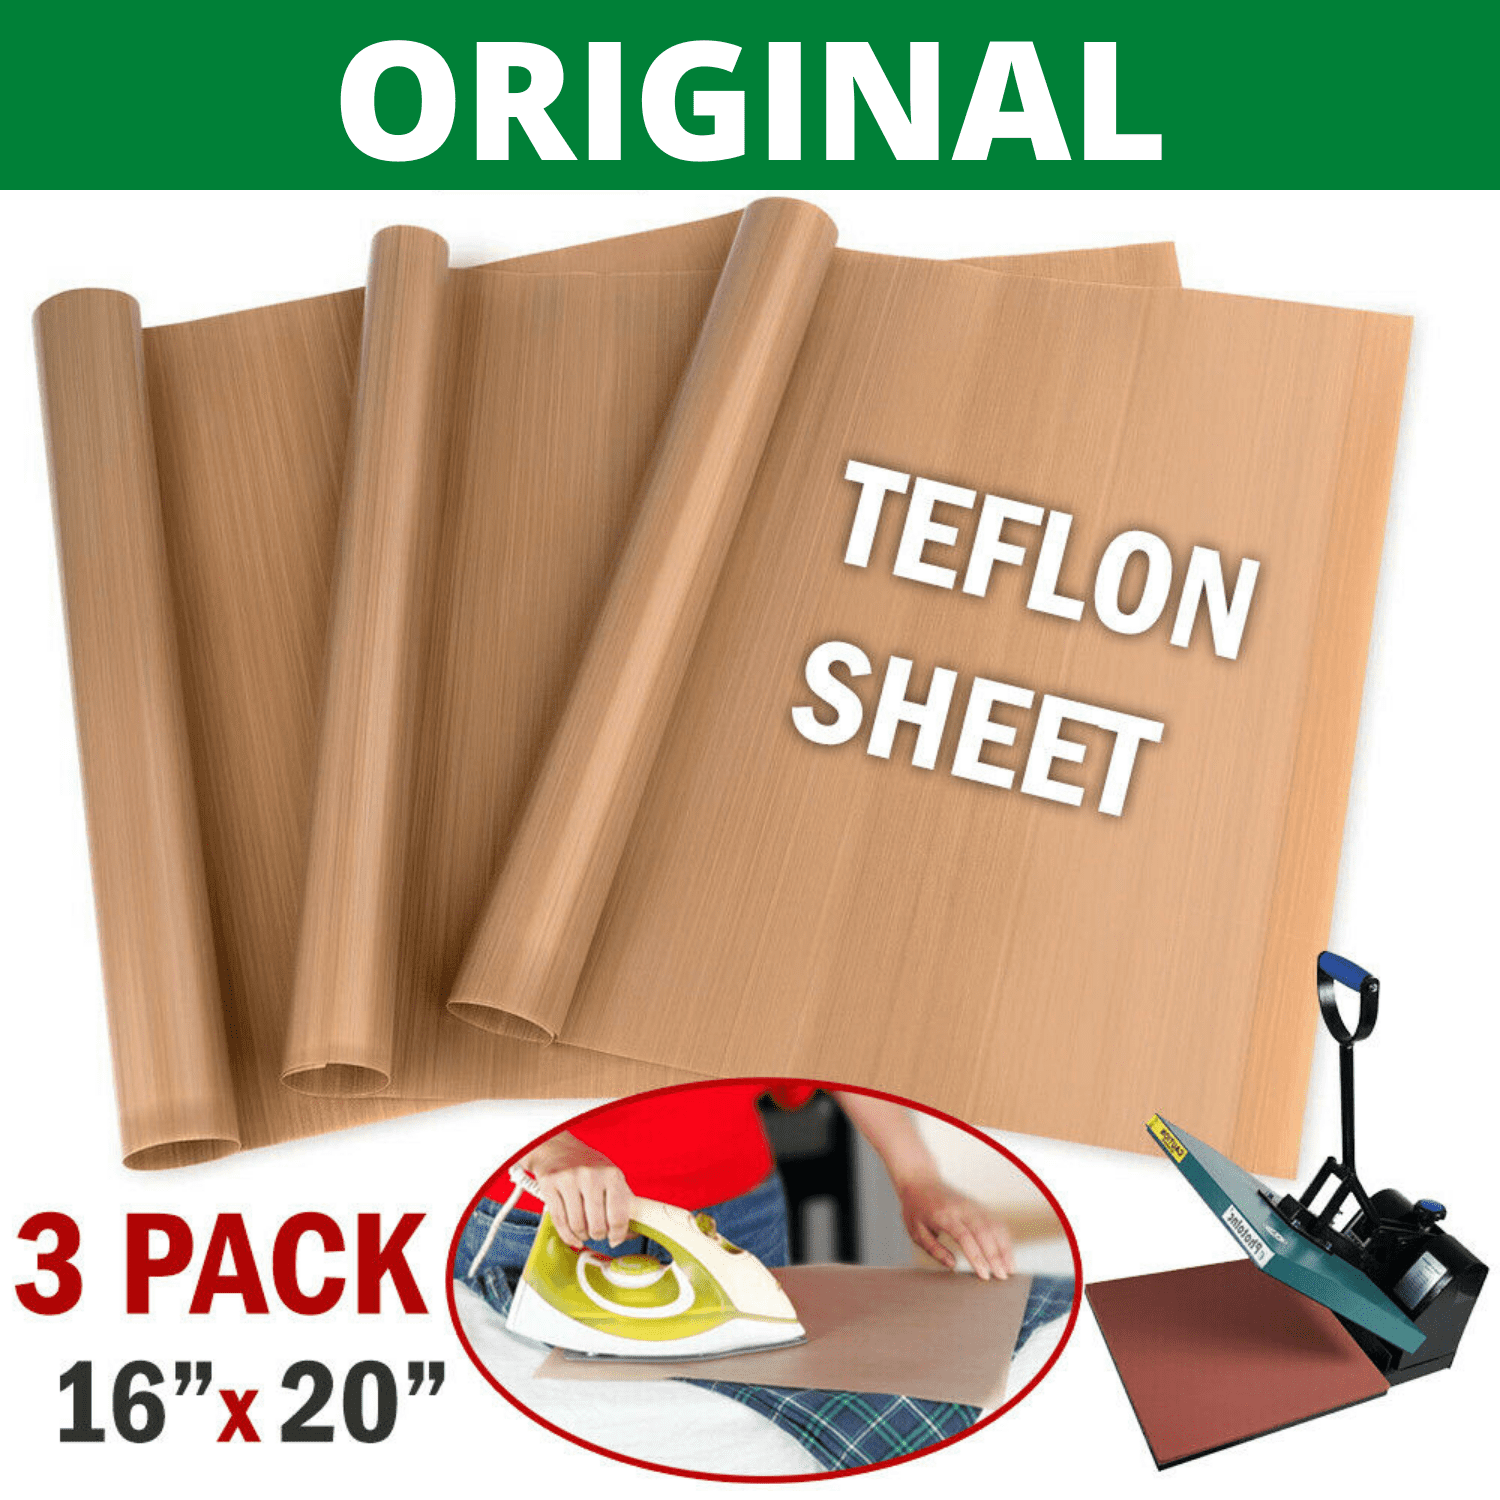 3 Pack Teflon Sheet 16"x24" Heat Press Transfer Art Craft Supply Sewing Tool Mat 